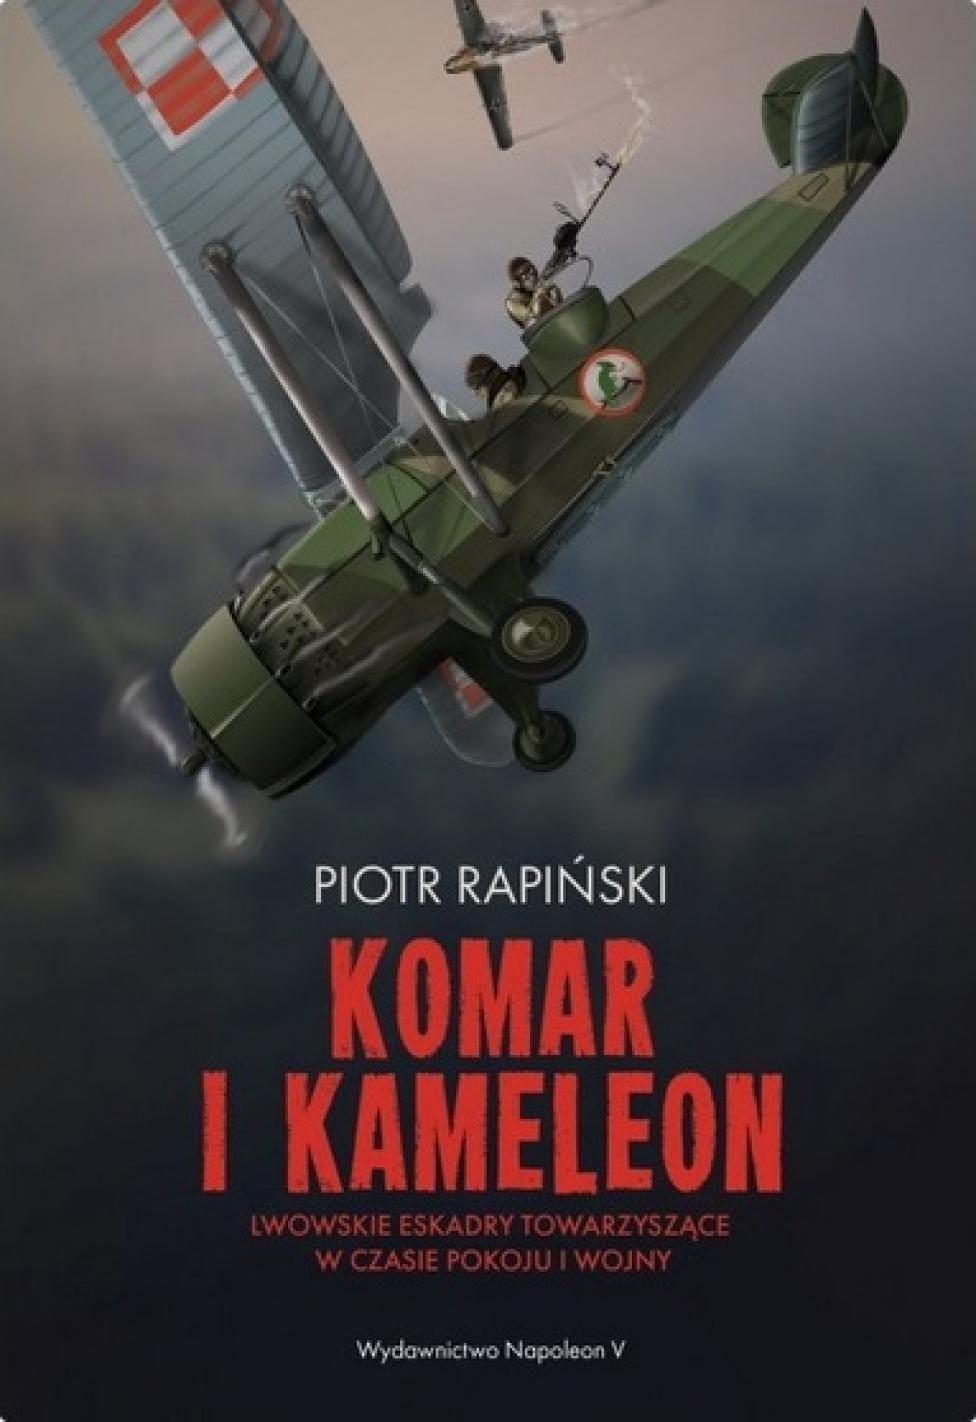 Książka: "Komar i kameleon. Lwowskie eskadry towarzyszące w czasie pokoju i wojny" (fot. Wydawnictwa Napoleon V)